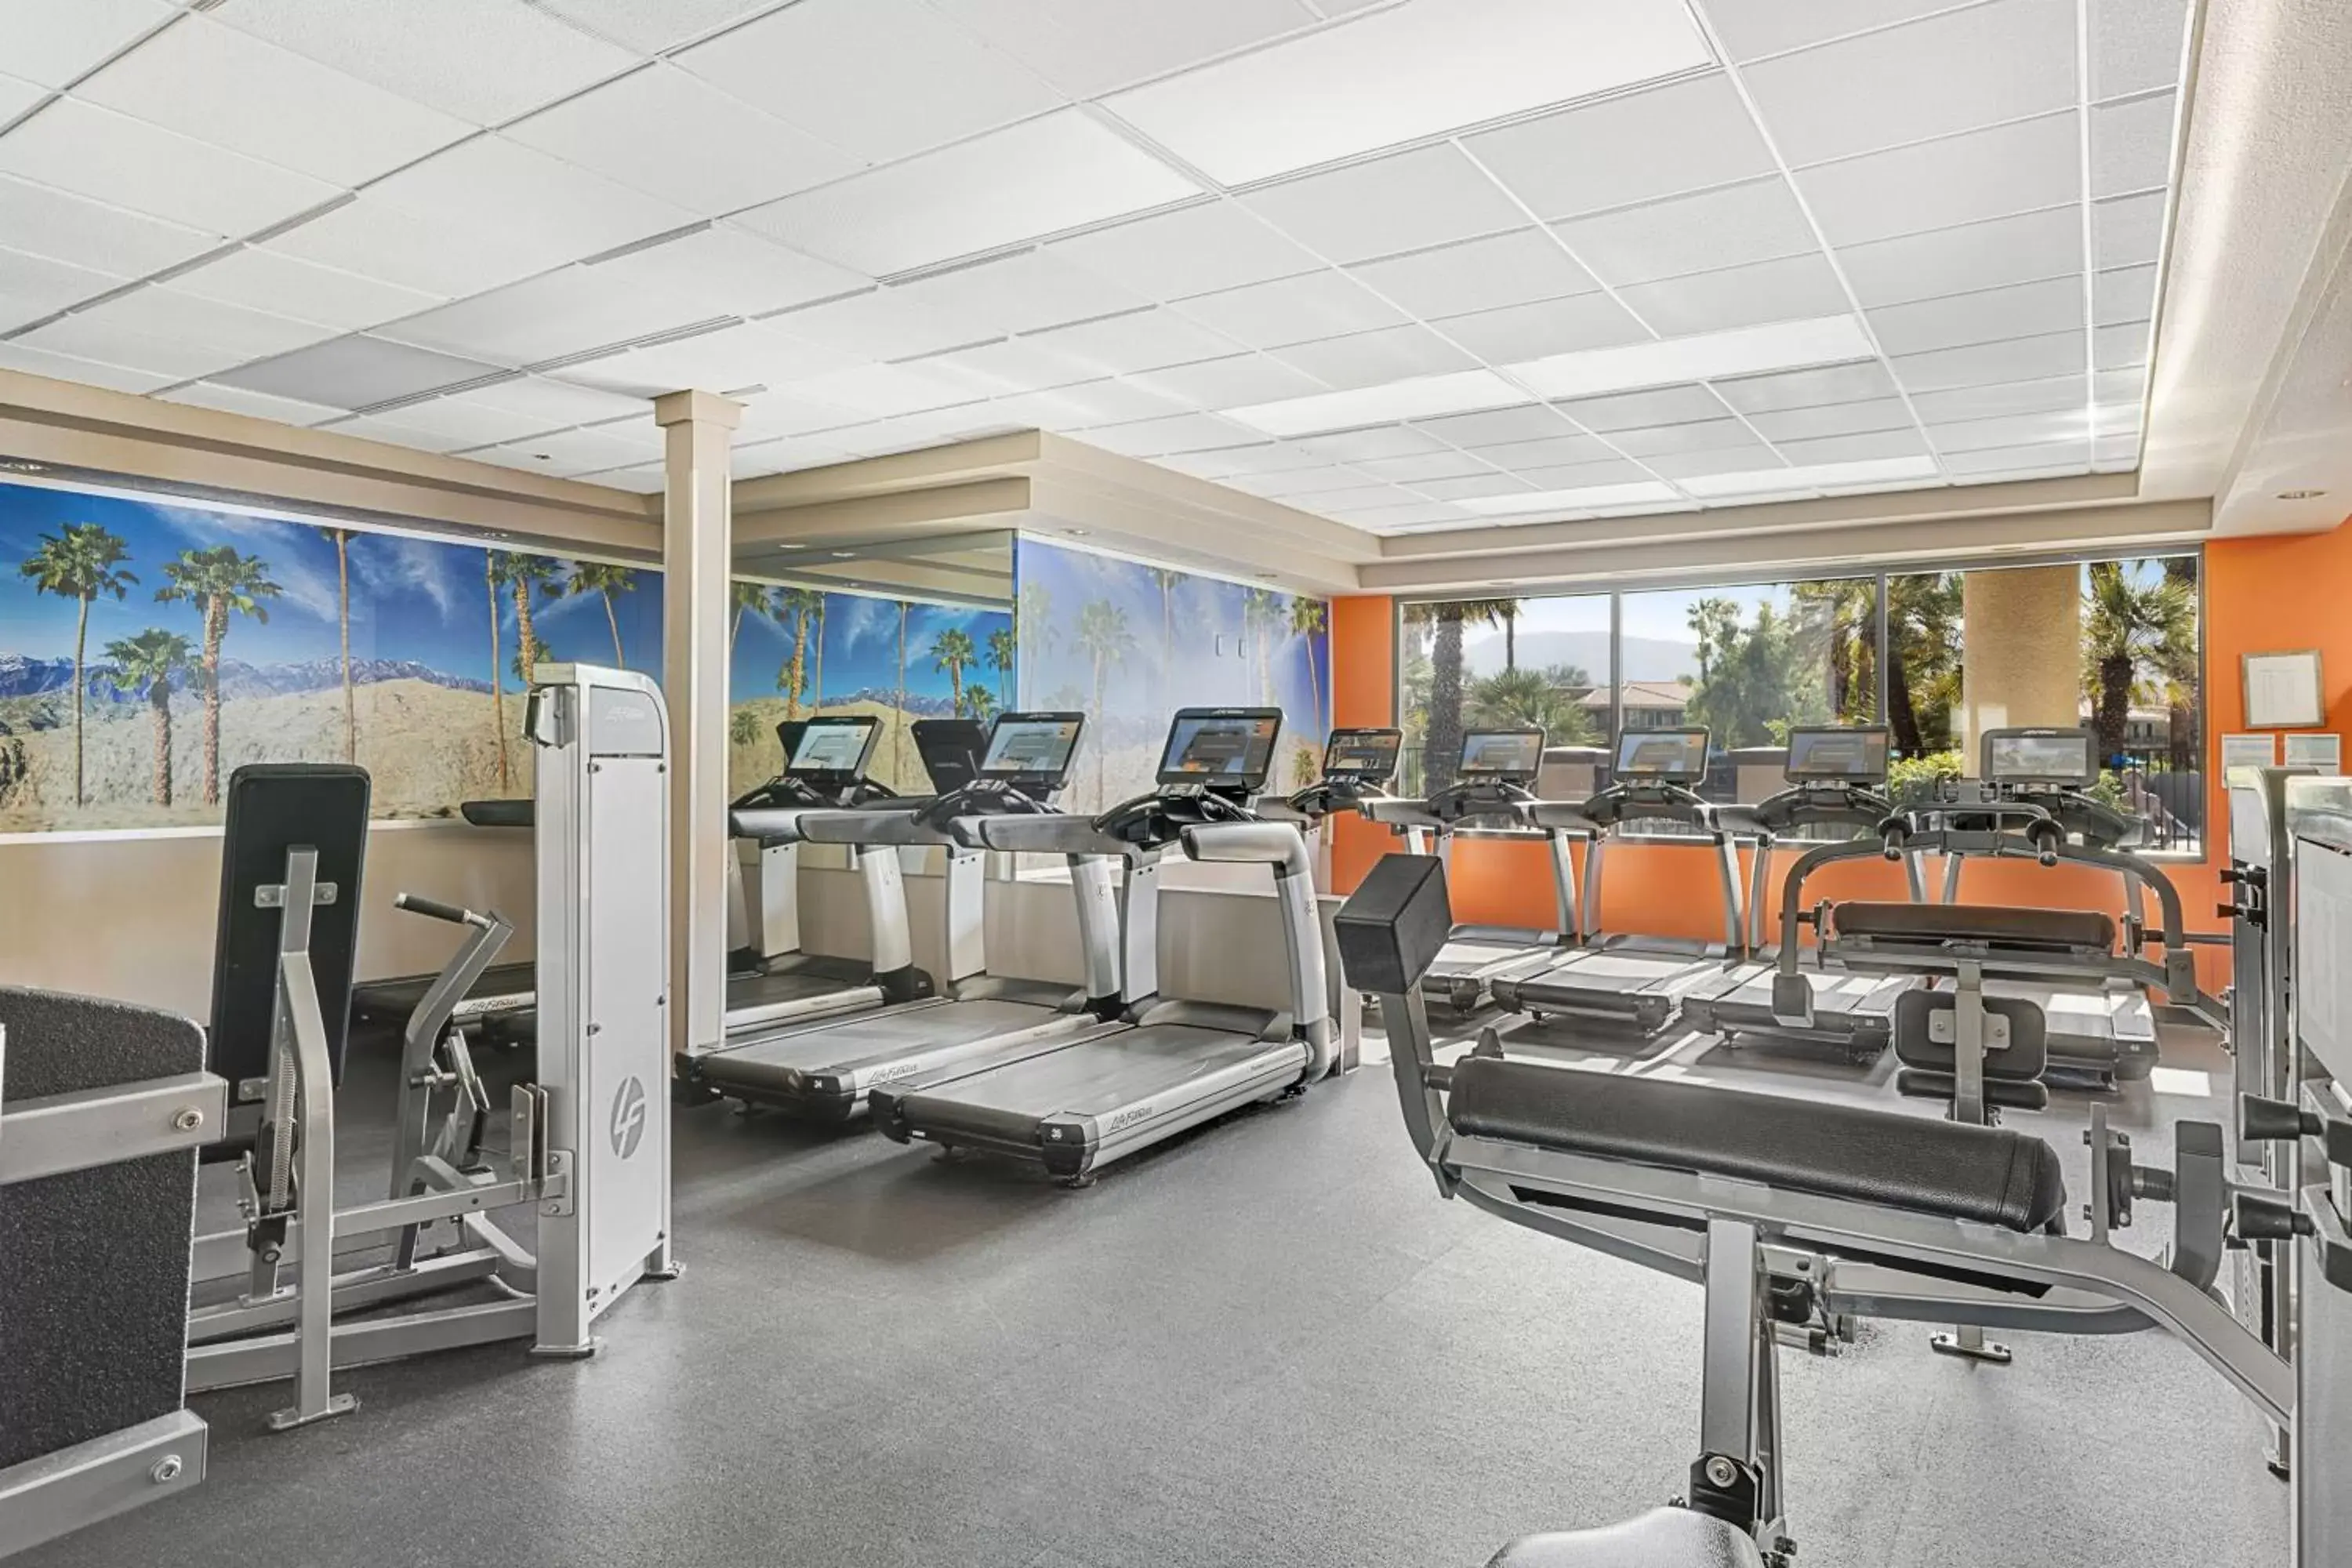 Fitness centre/facilities, Fitness Center/Facilities in Marriott's Desert Springs Villas II